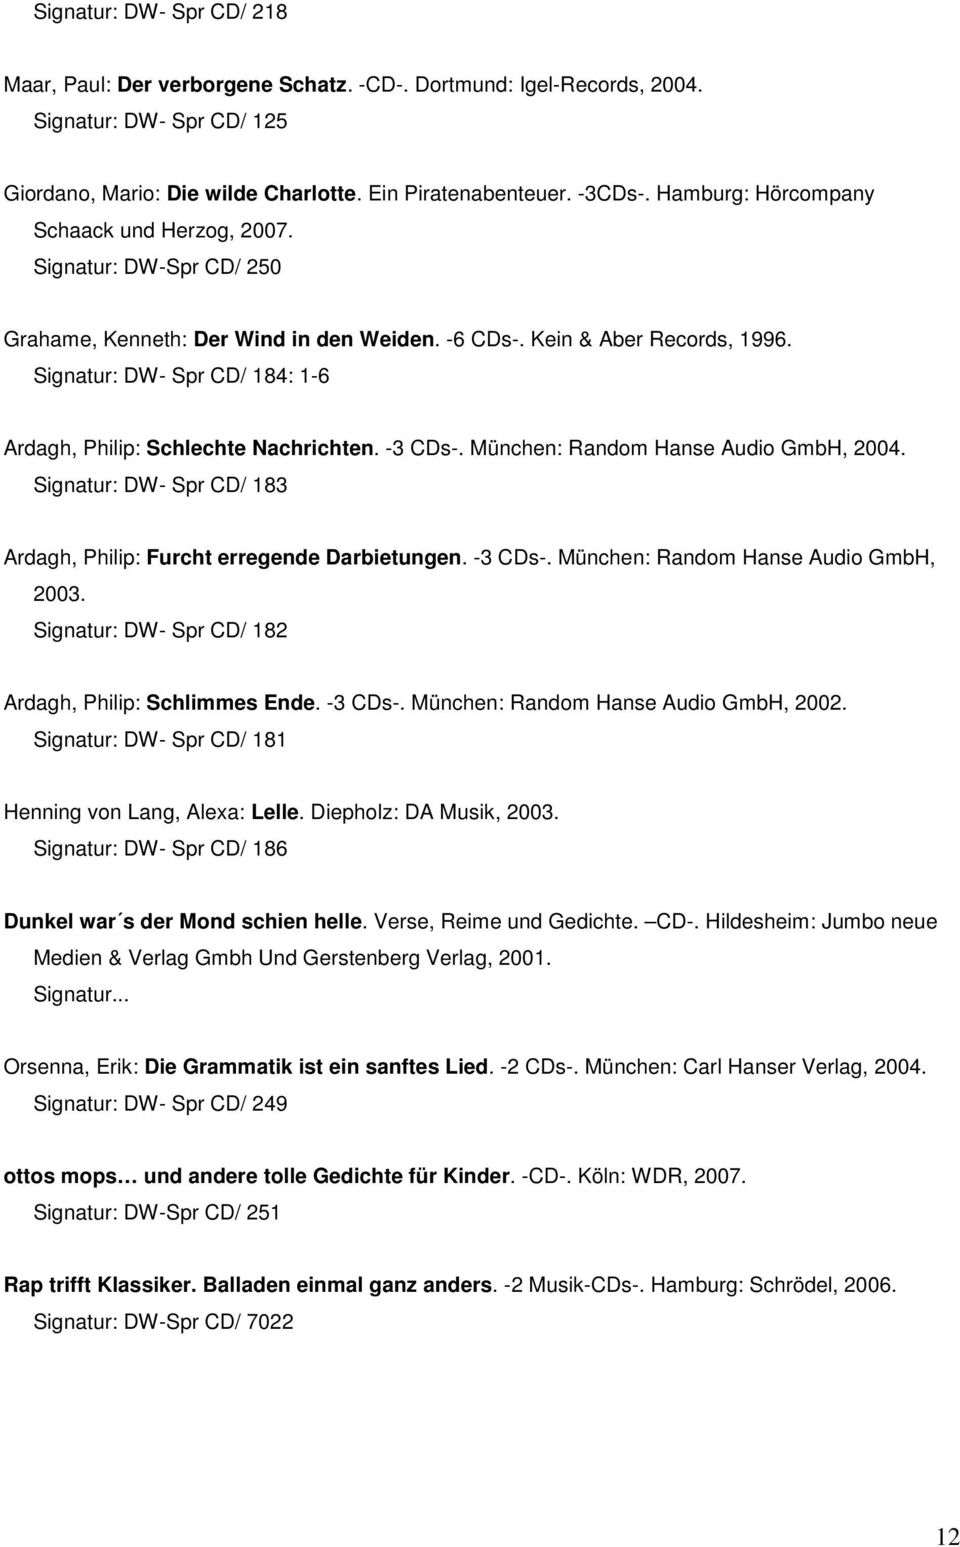 Signatur: DW- Spr CD/ 184: 1-6 Ardagh, Philip: Schlechte Nachrichten. -3 CDs-. München: Random Hanse Audio GmbH, 2004. Signatur: DW- Spr CD/ 183 Ardagh, Philip: Furcht erregende Darbietungen. -3 CDs-. München: Random Hanse Audio GmbH, 2003.